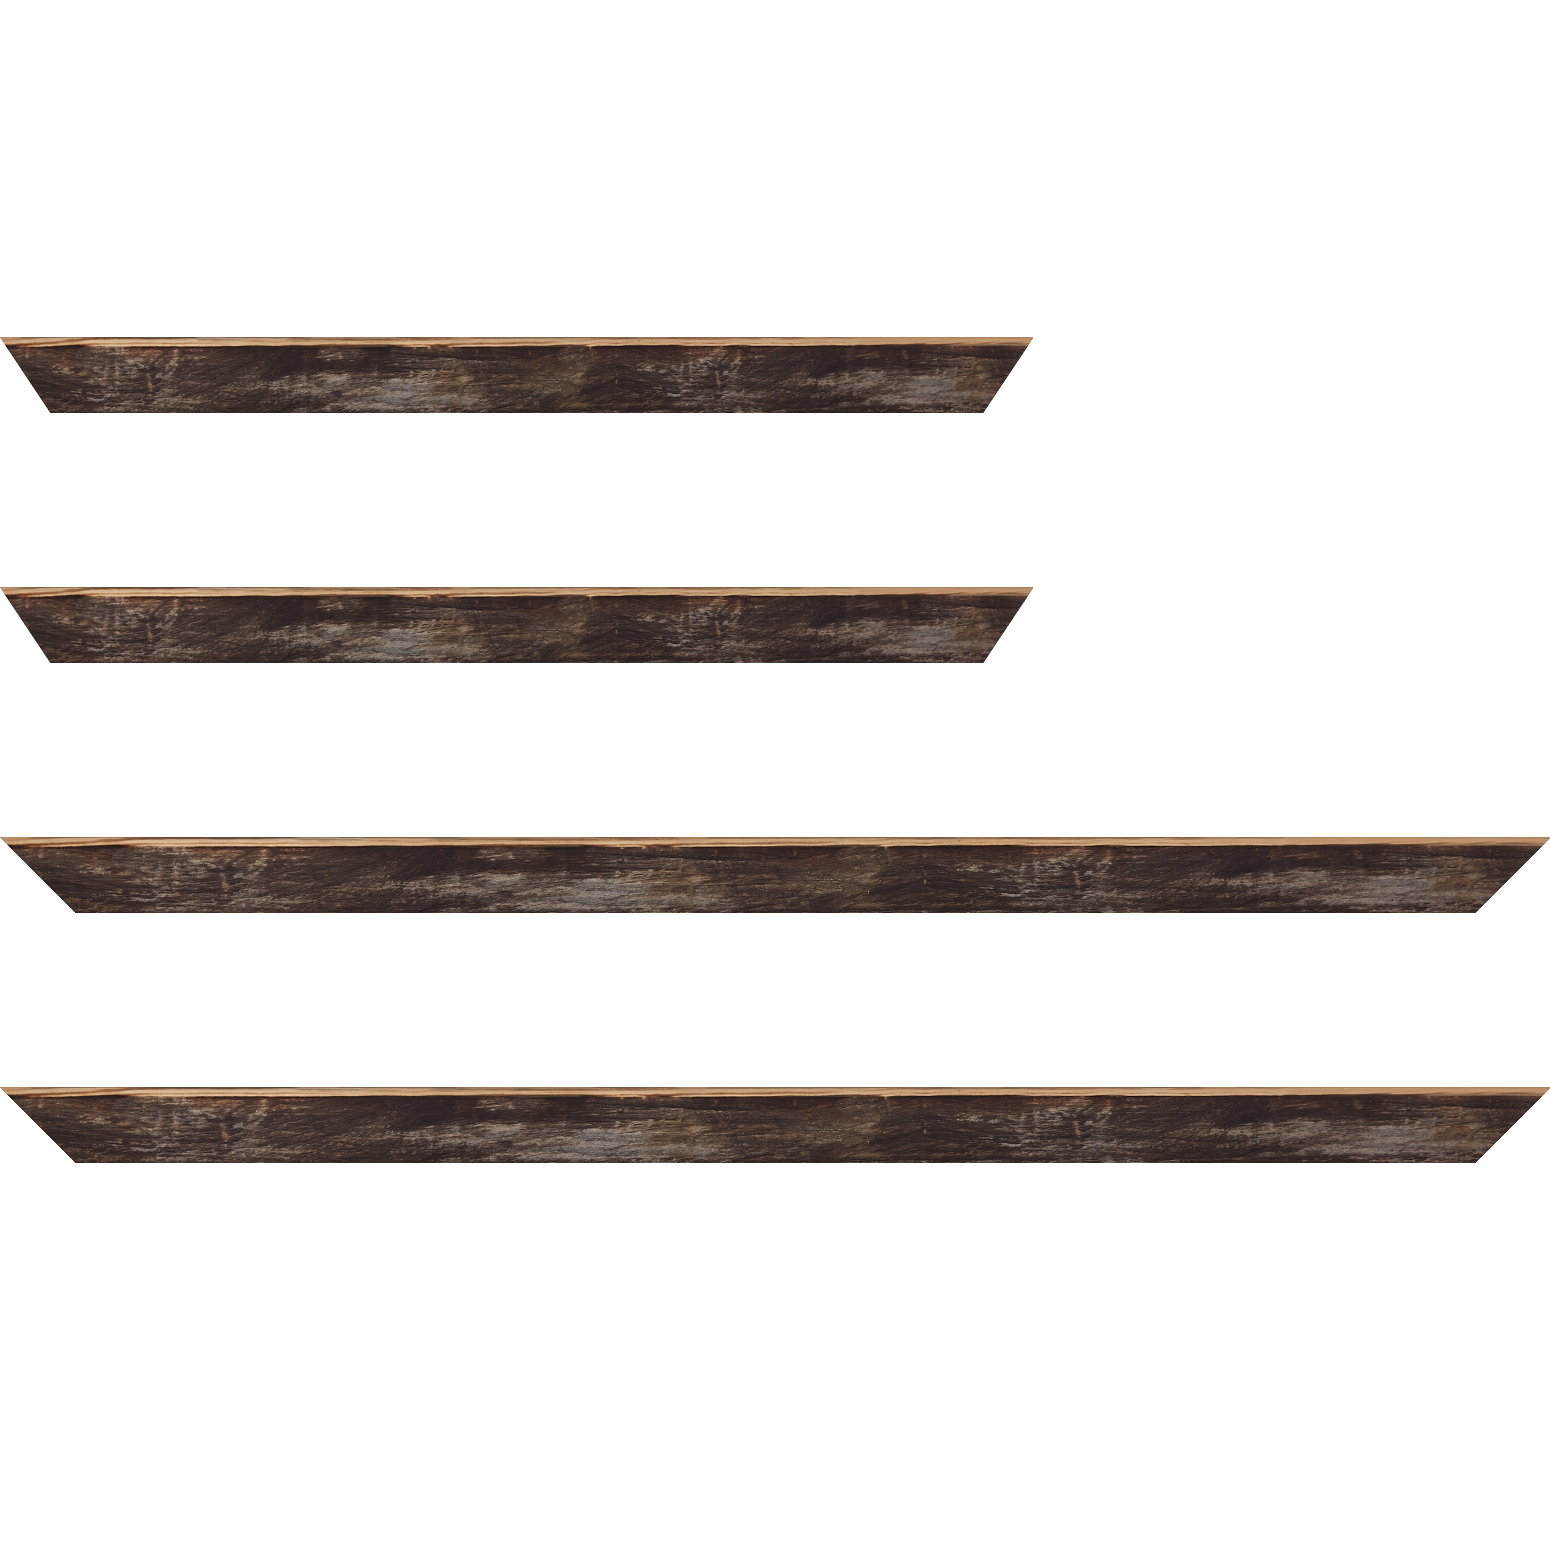 Baguette bois profil arrondi en pente plongeant largeur 2.4cm couleur noir ébène effet ressuyé, angle du cadre extérieur filet naturel - 59.4x84.1